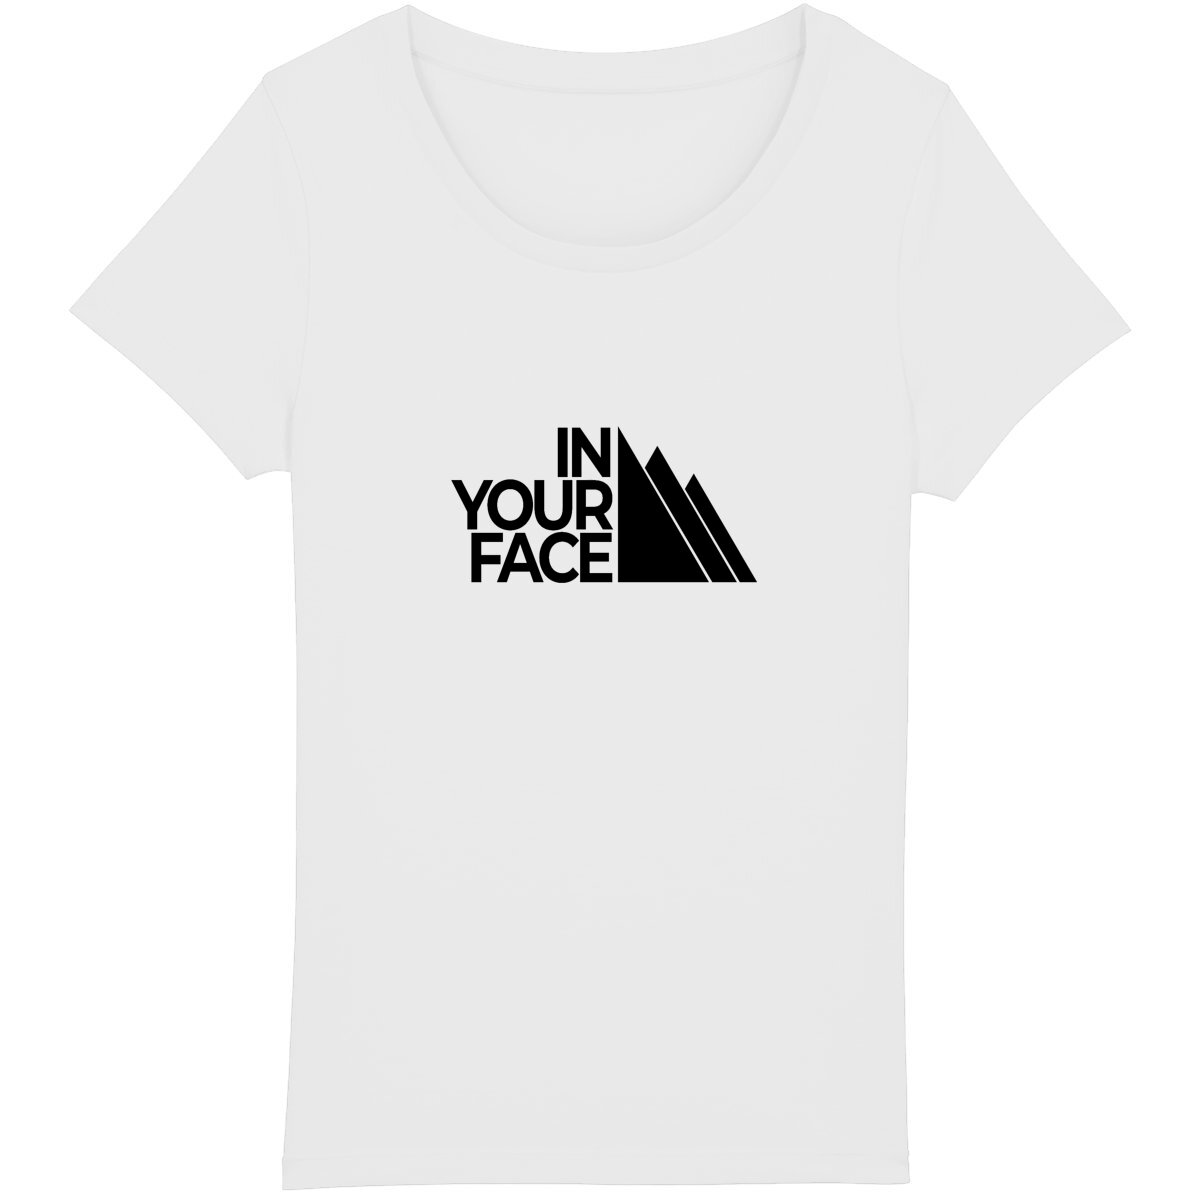 T-shirt en coton bio pour femme, parodie ludique pour traileuses